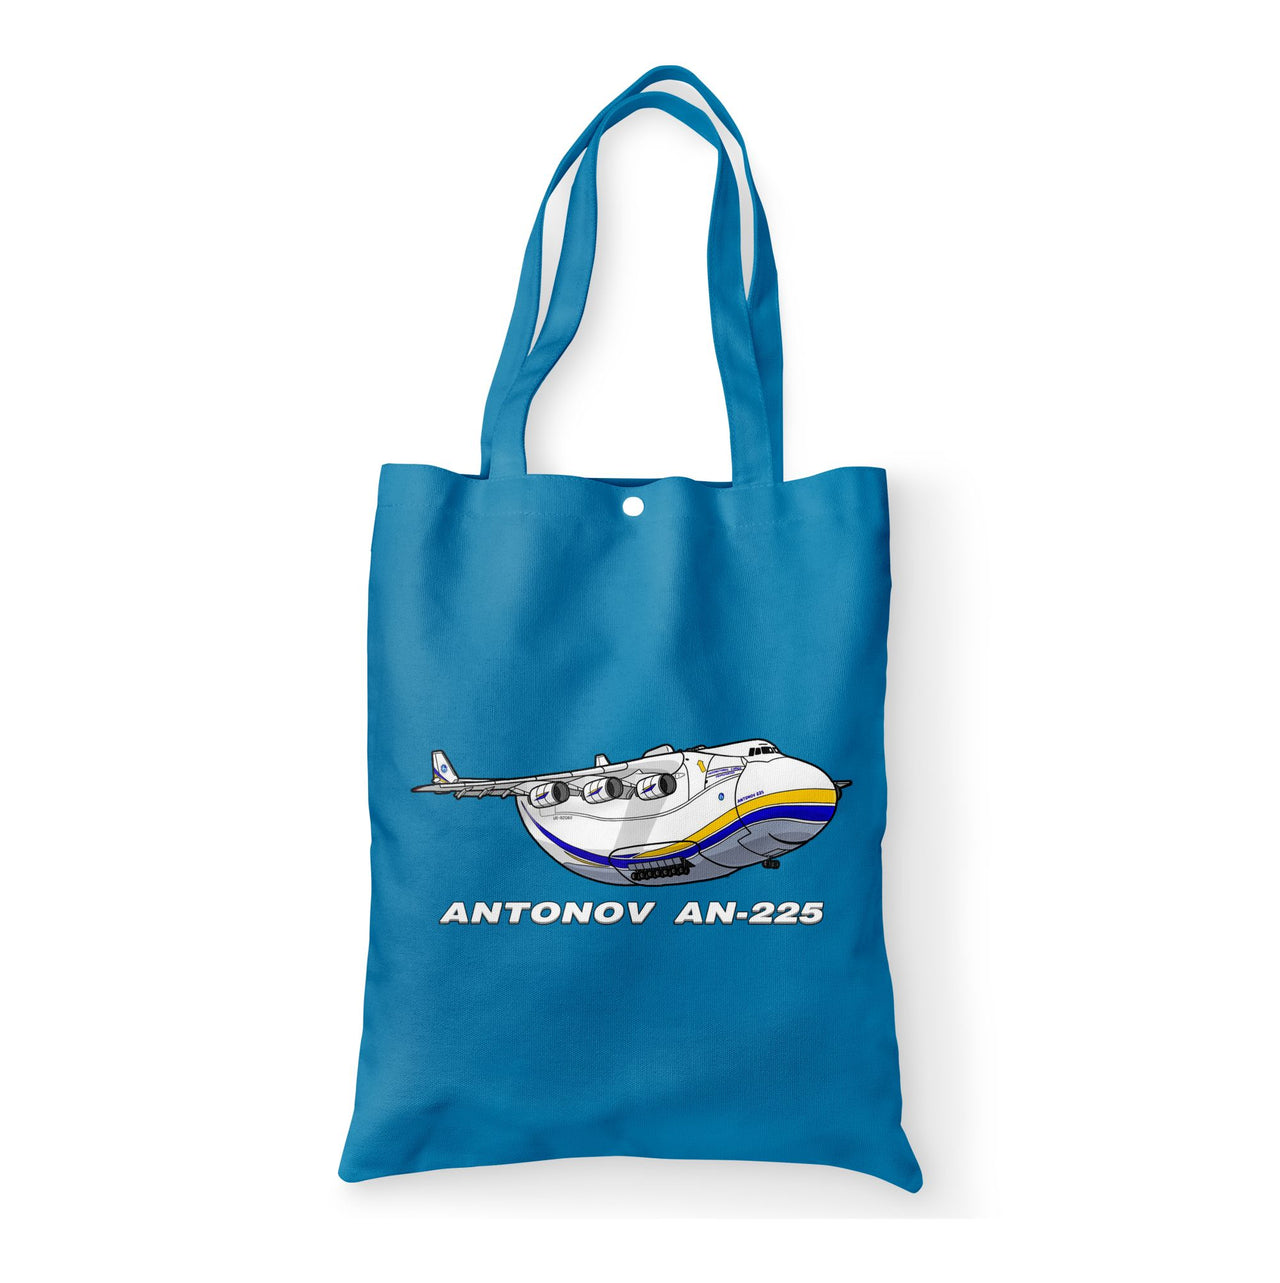 Antonov AN-225 (17) Designed Tote Bags